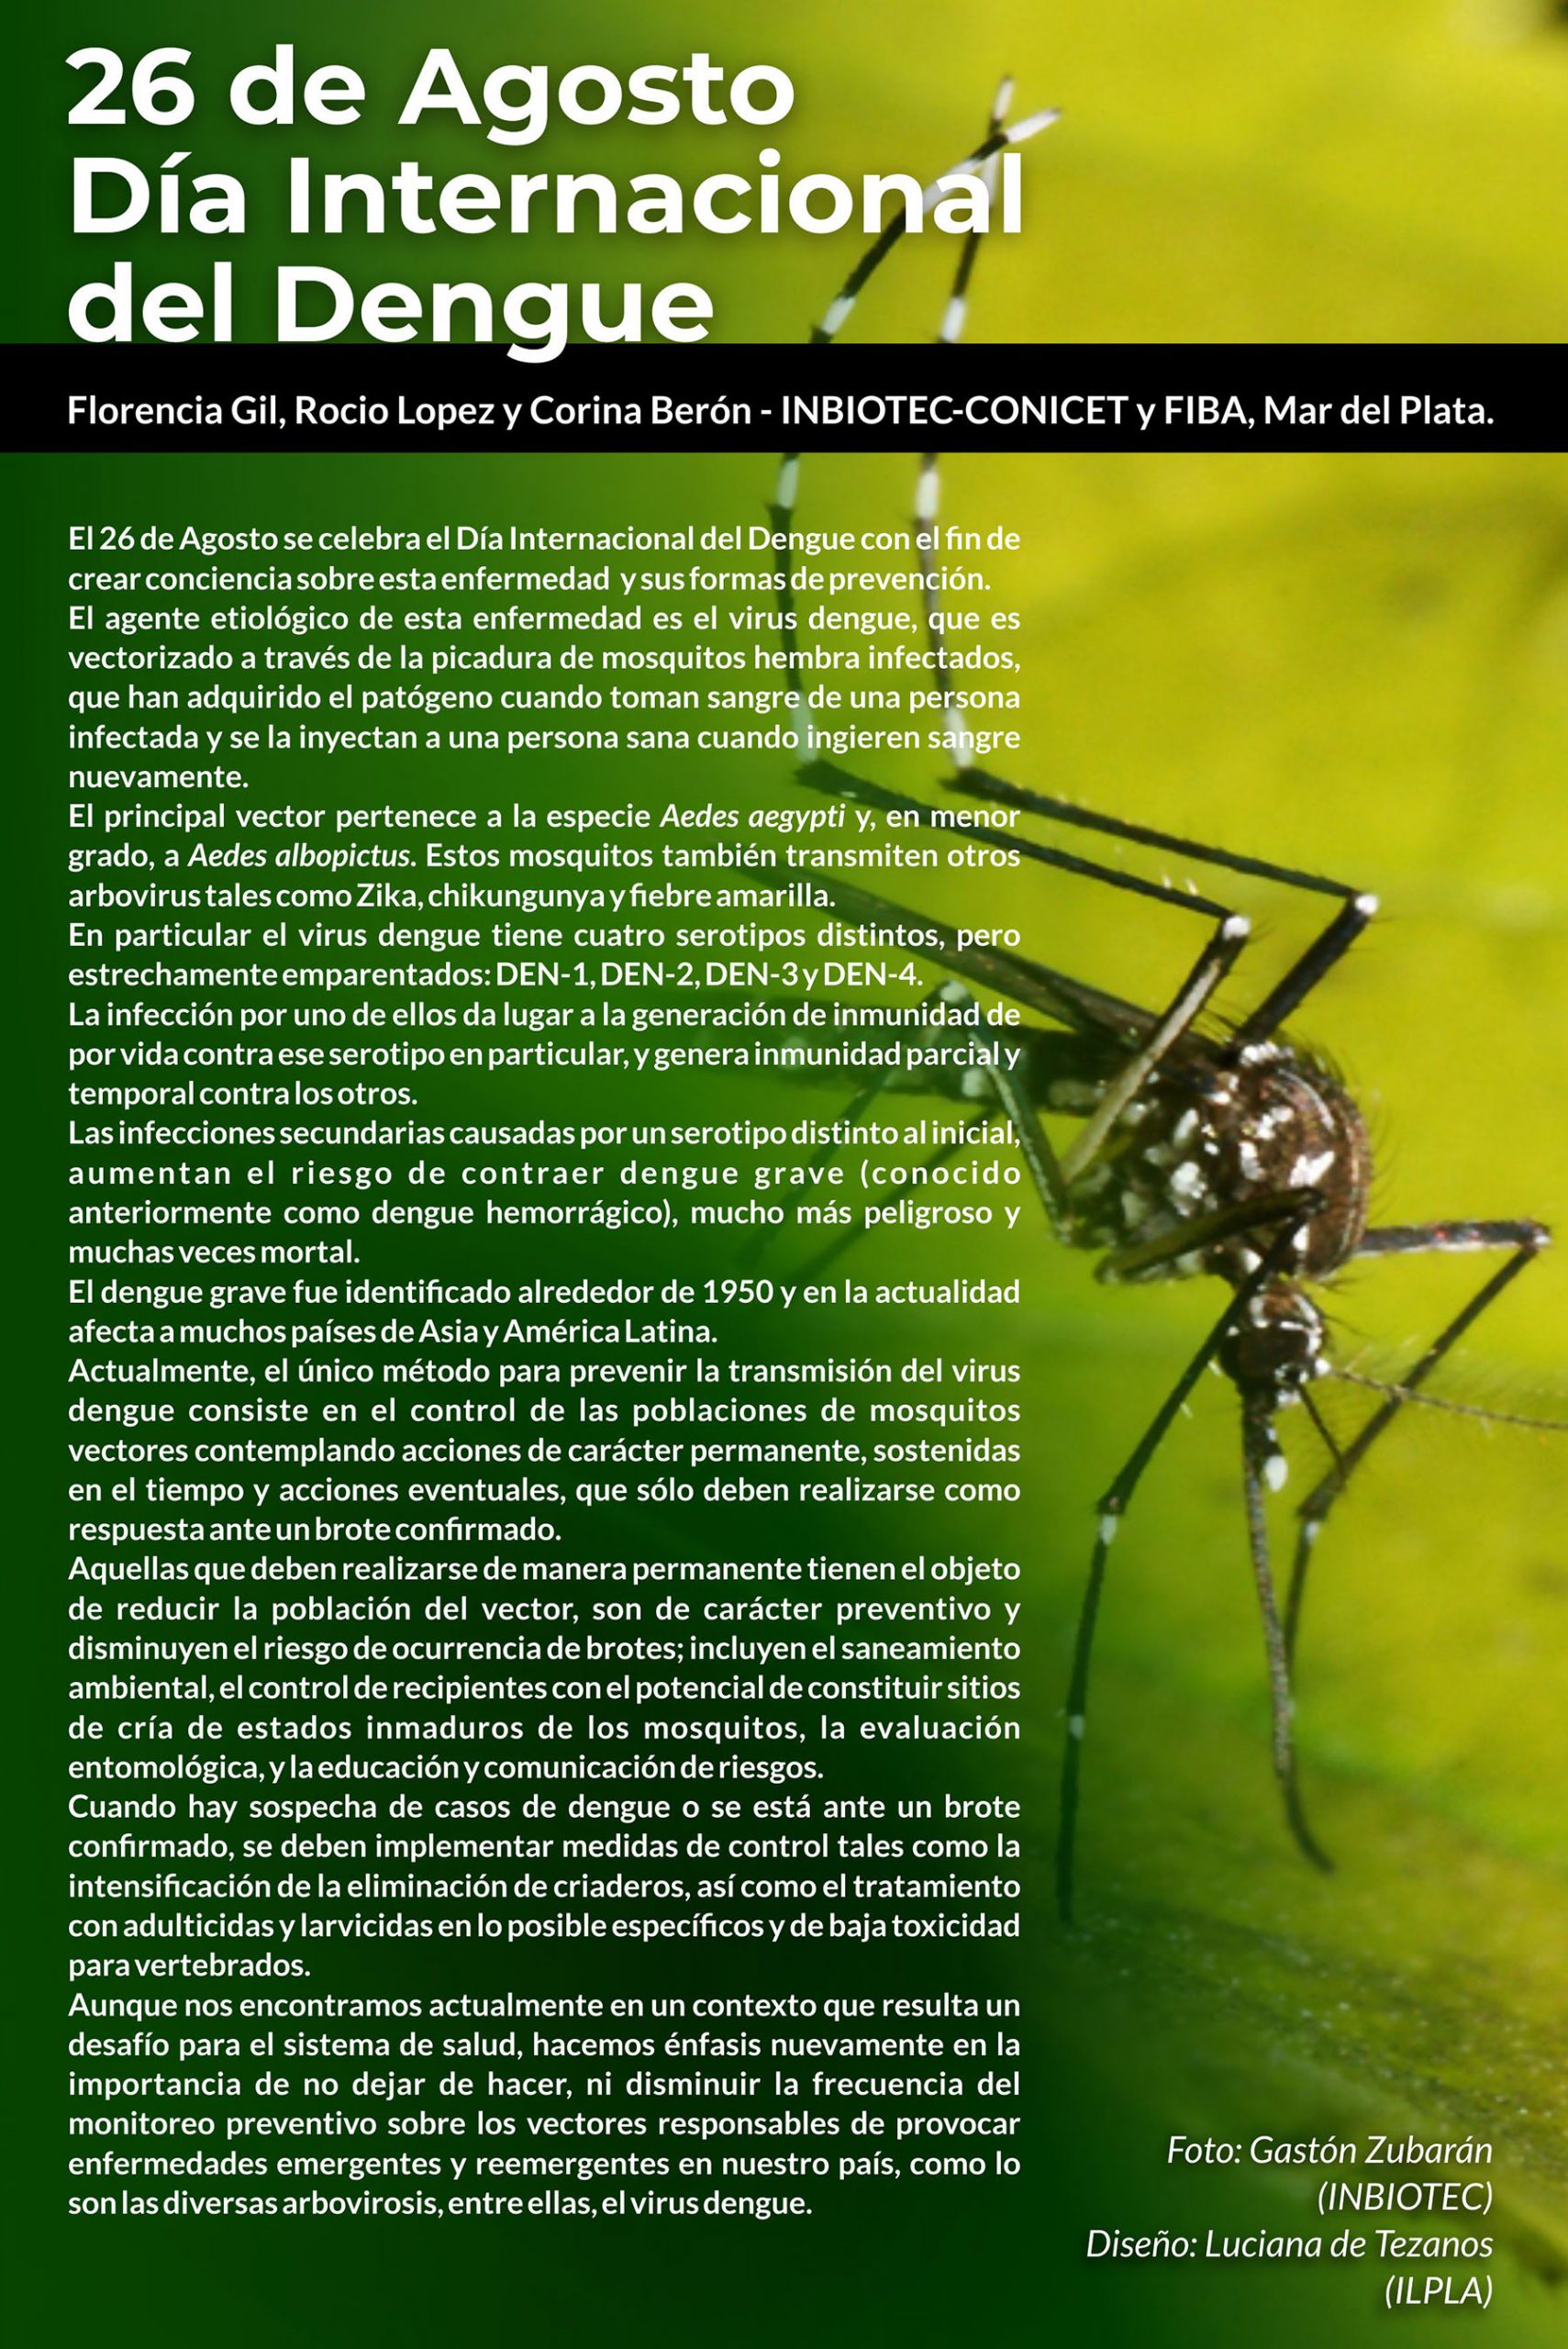 26 de Agosto, Día Internacional del Dengue